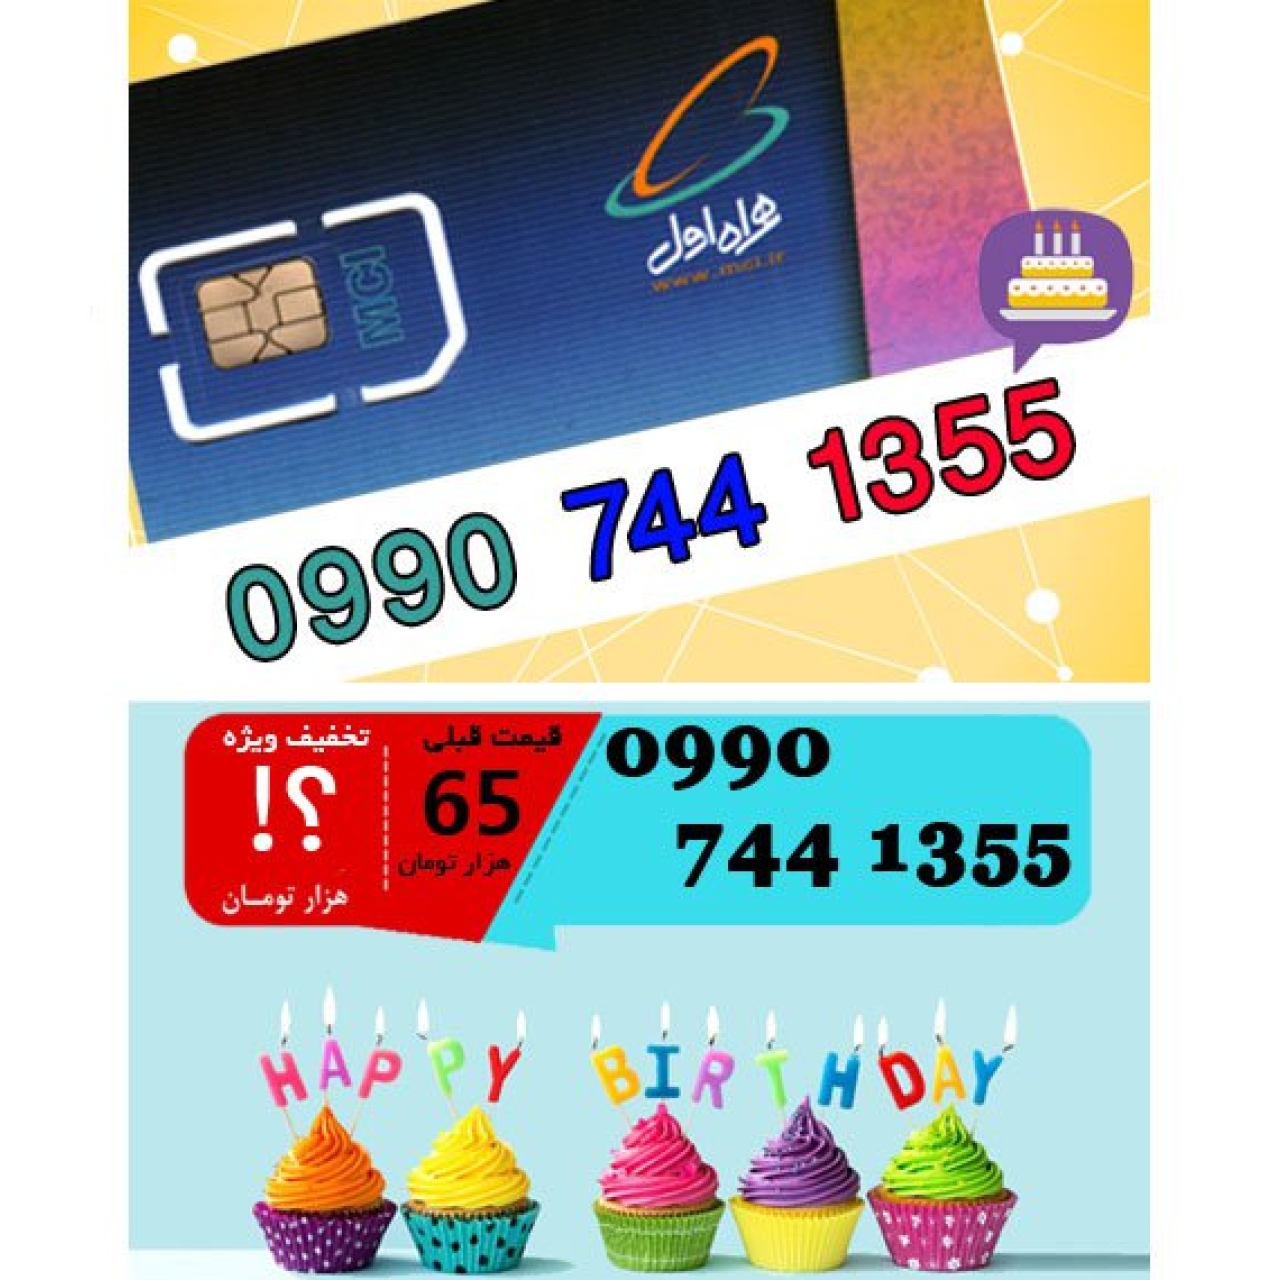 سیم کارت اعتباری همراه اول 09907441355 تاریخ تولد